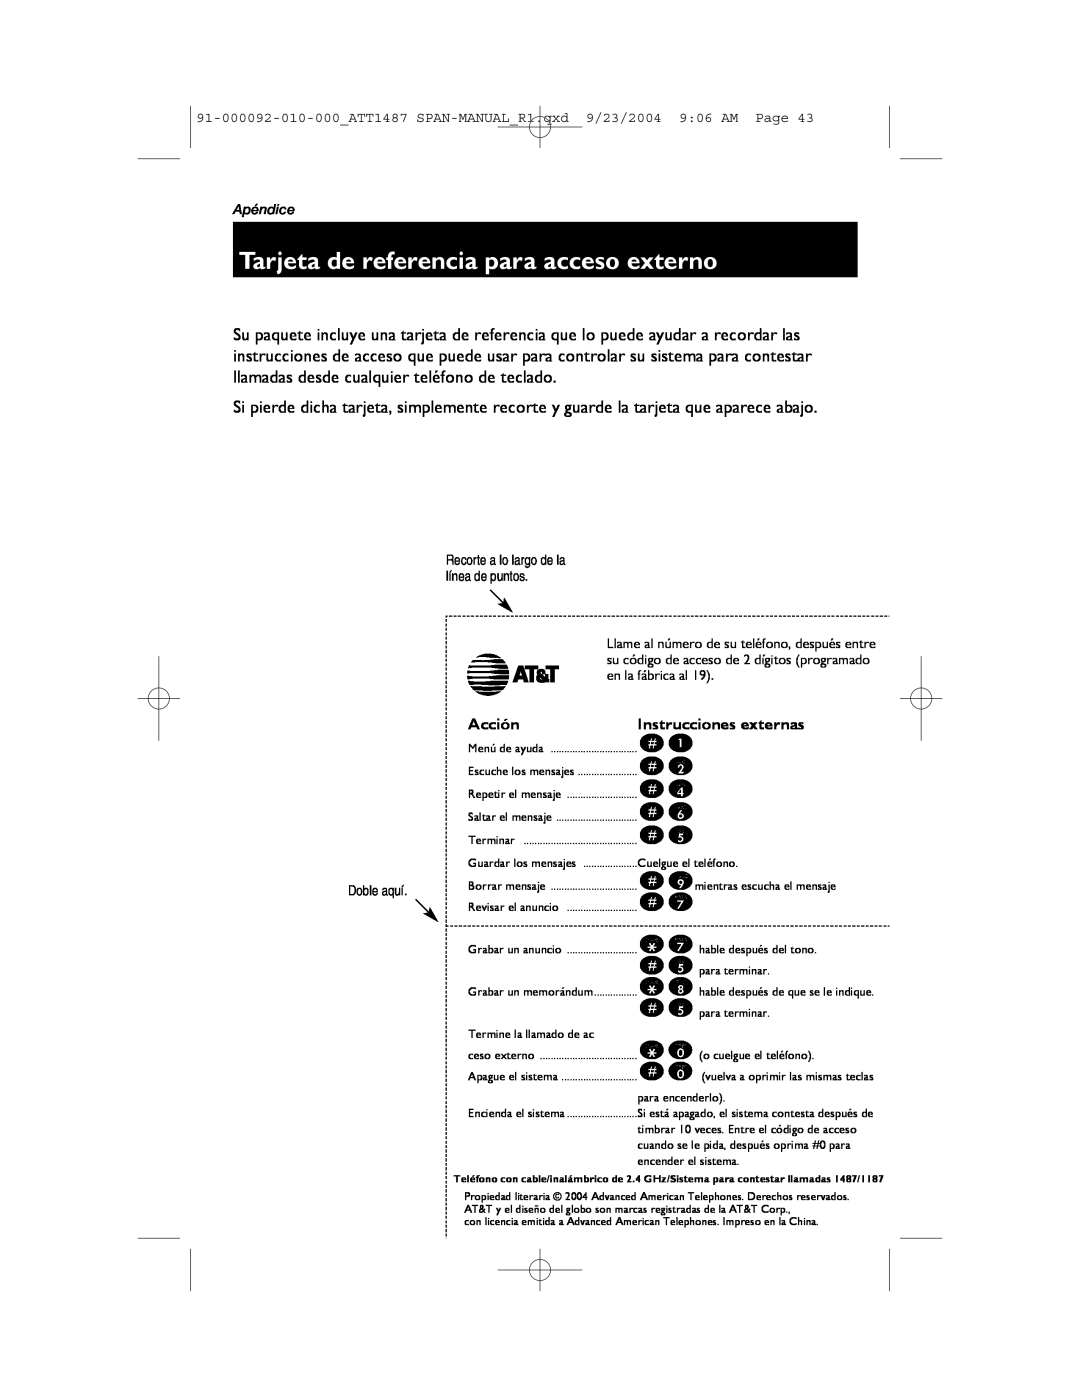 AT&T 1187, 1487 manual Tarjeta de referencia para acceso externo, Acción, Instrucciones externas 